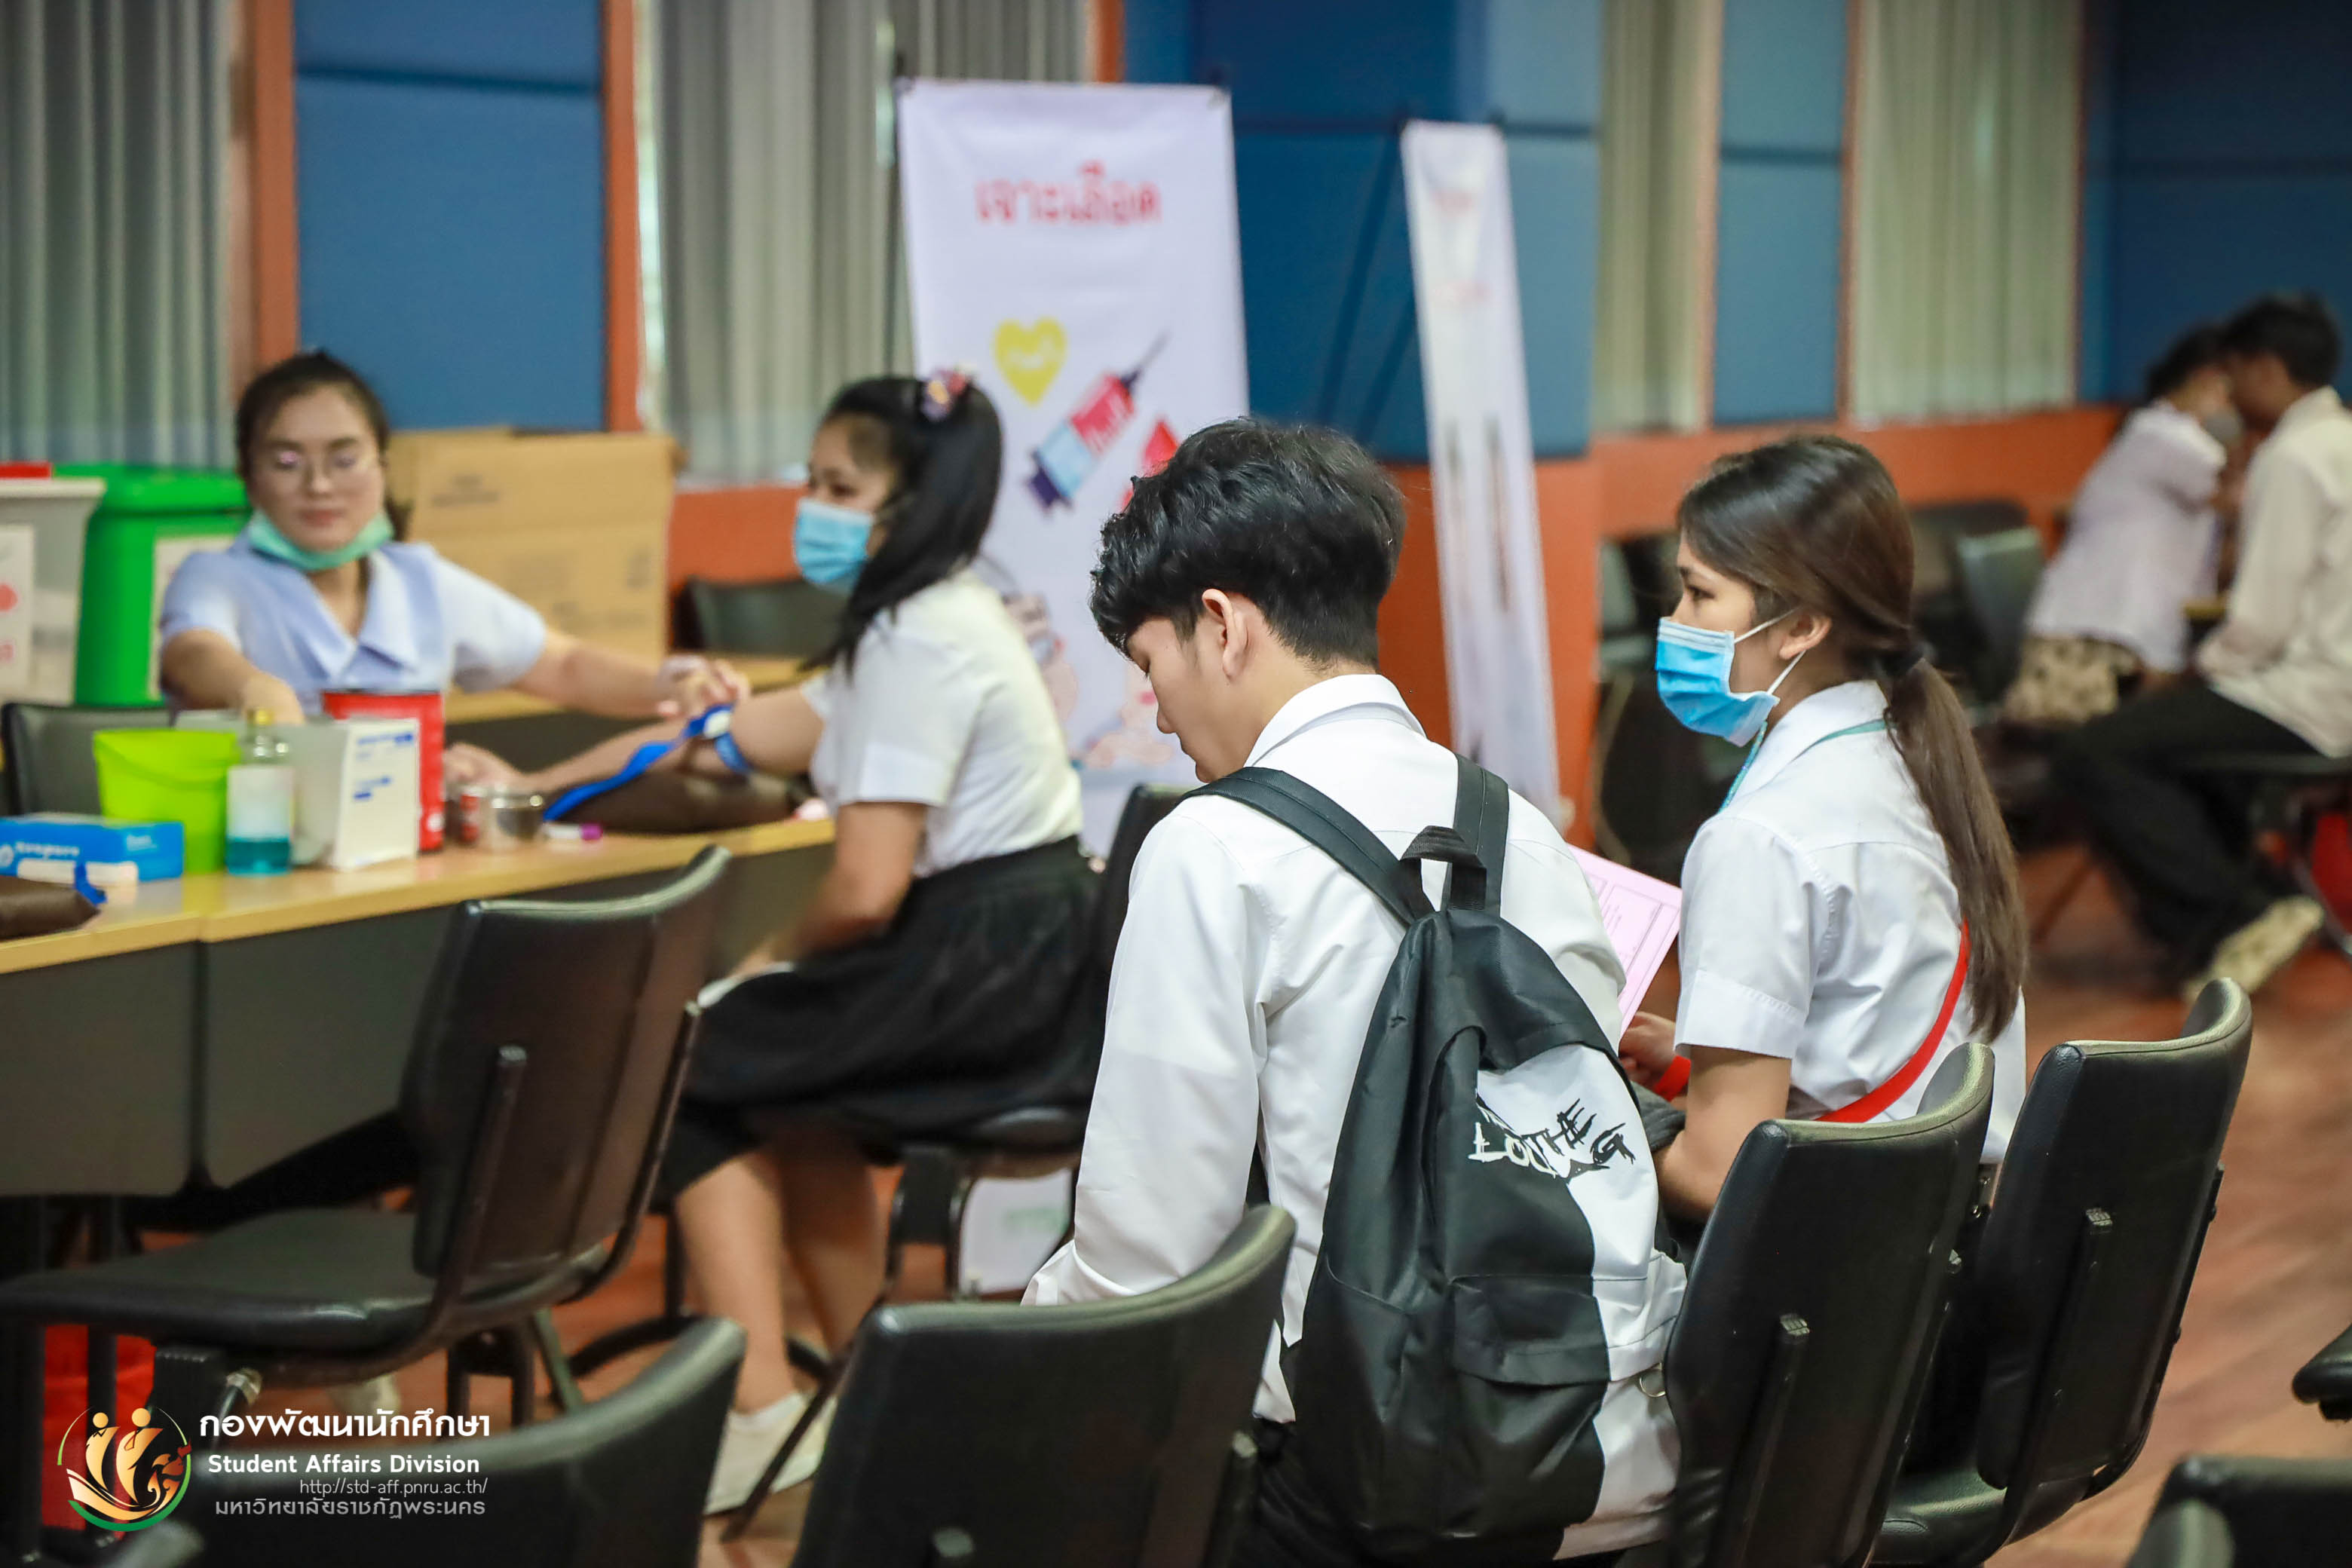 27 กันยายน 2563 กองพัฒนานักศึกษา มหาวิทยาลัยราชภัฏพระนคร จัดให้มีการตรวจสุขภาพนักศึกษาใหม่ภาคปกติ ประจำปีการศึกษา 2563